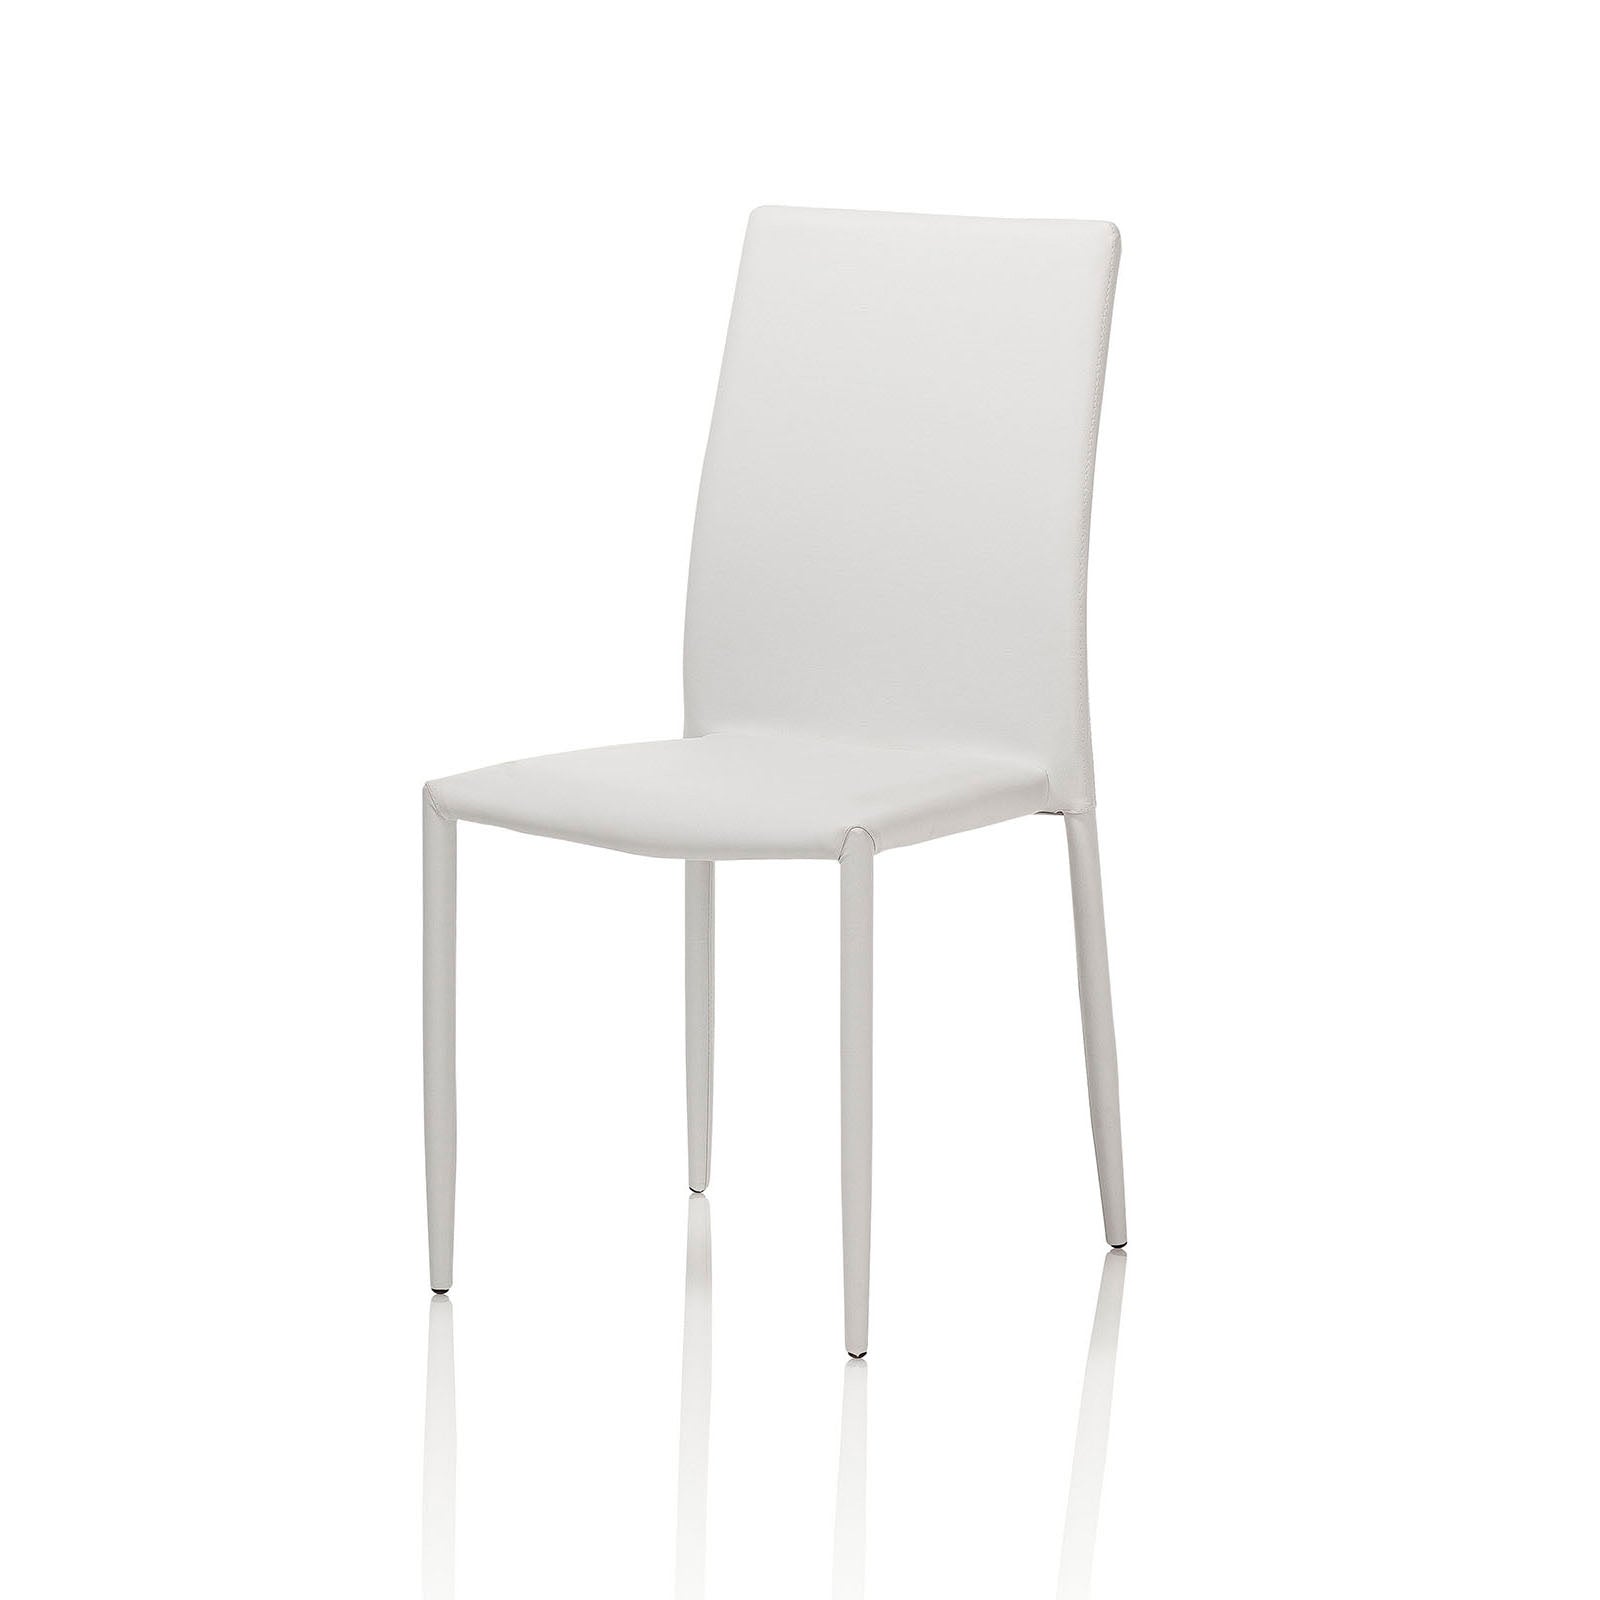 Conjunto de 4 sillas ALIS de metal tapizado en símil piel blanca